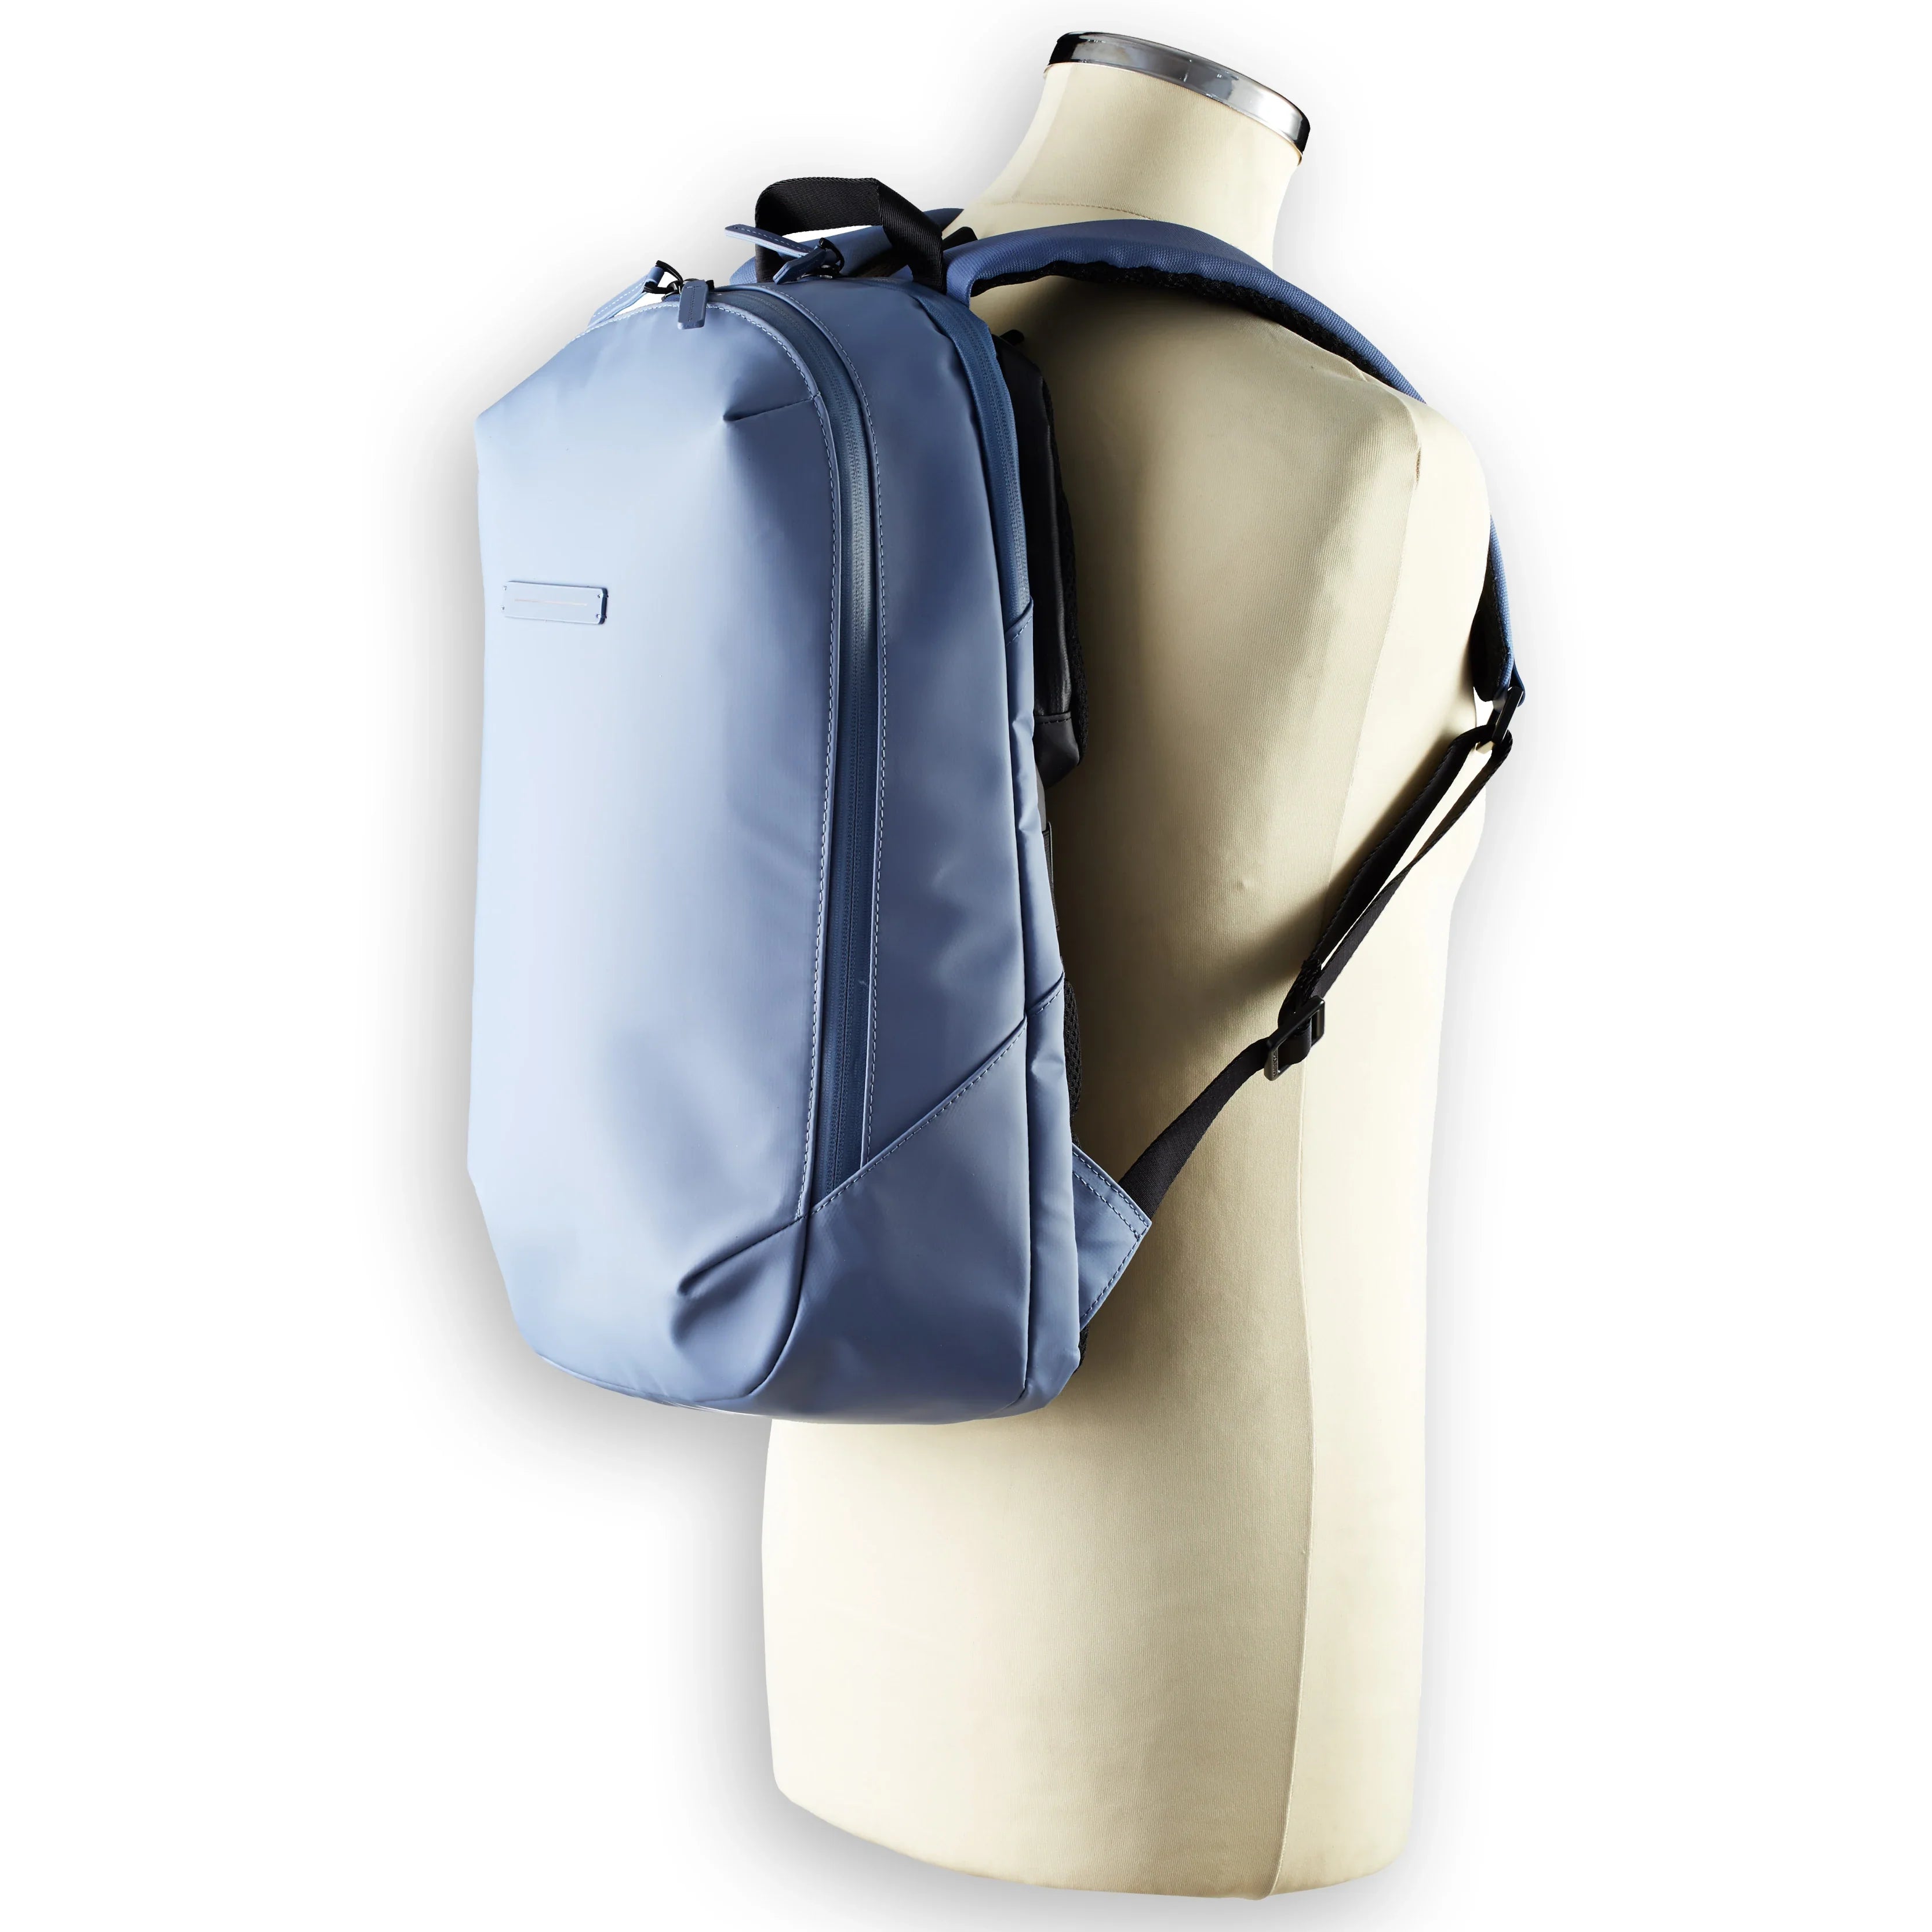 Horizn Studios Gion backpack M 46 cm - dark olive